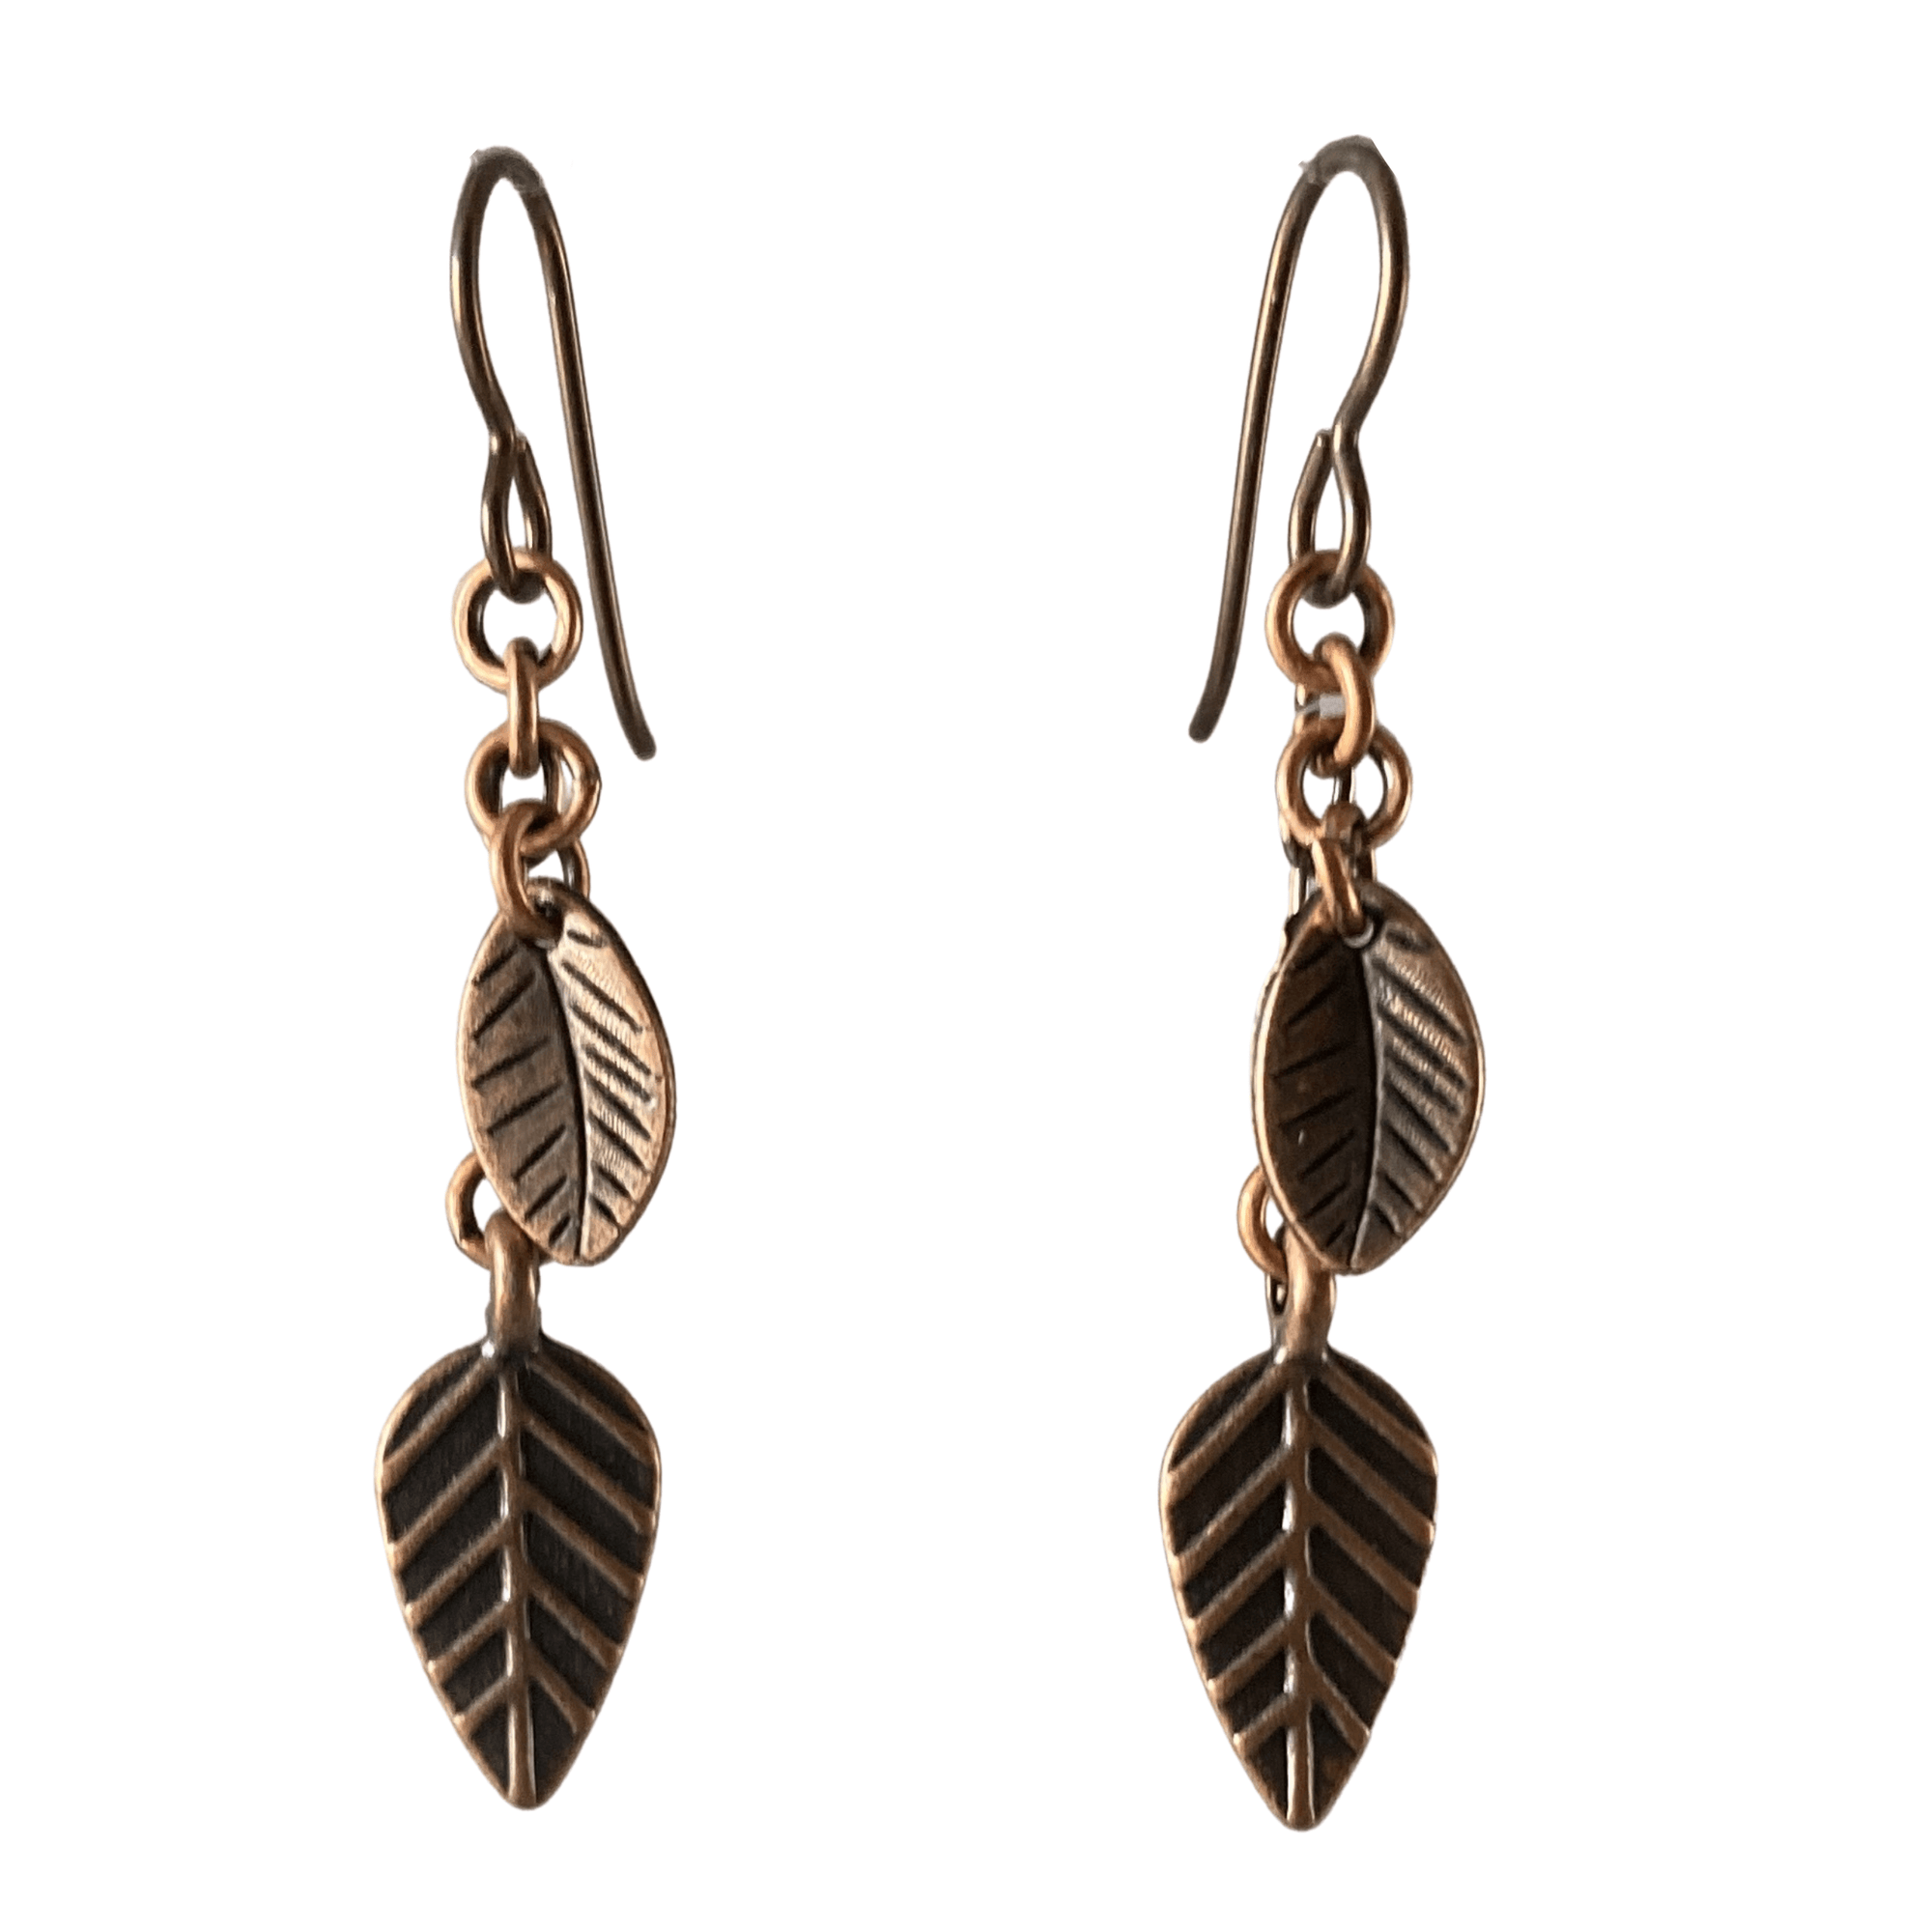 Antique Copper Leaf Dangle Earrings for Sensitive Ears-Earrings- Creative Jewelry by Marcia